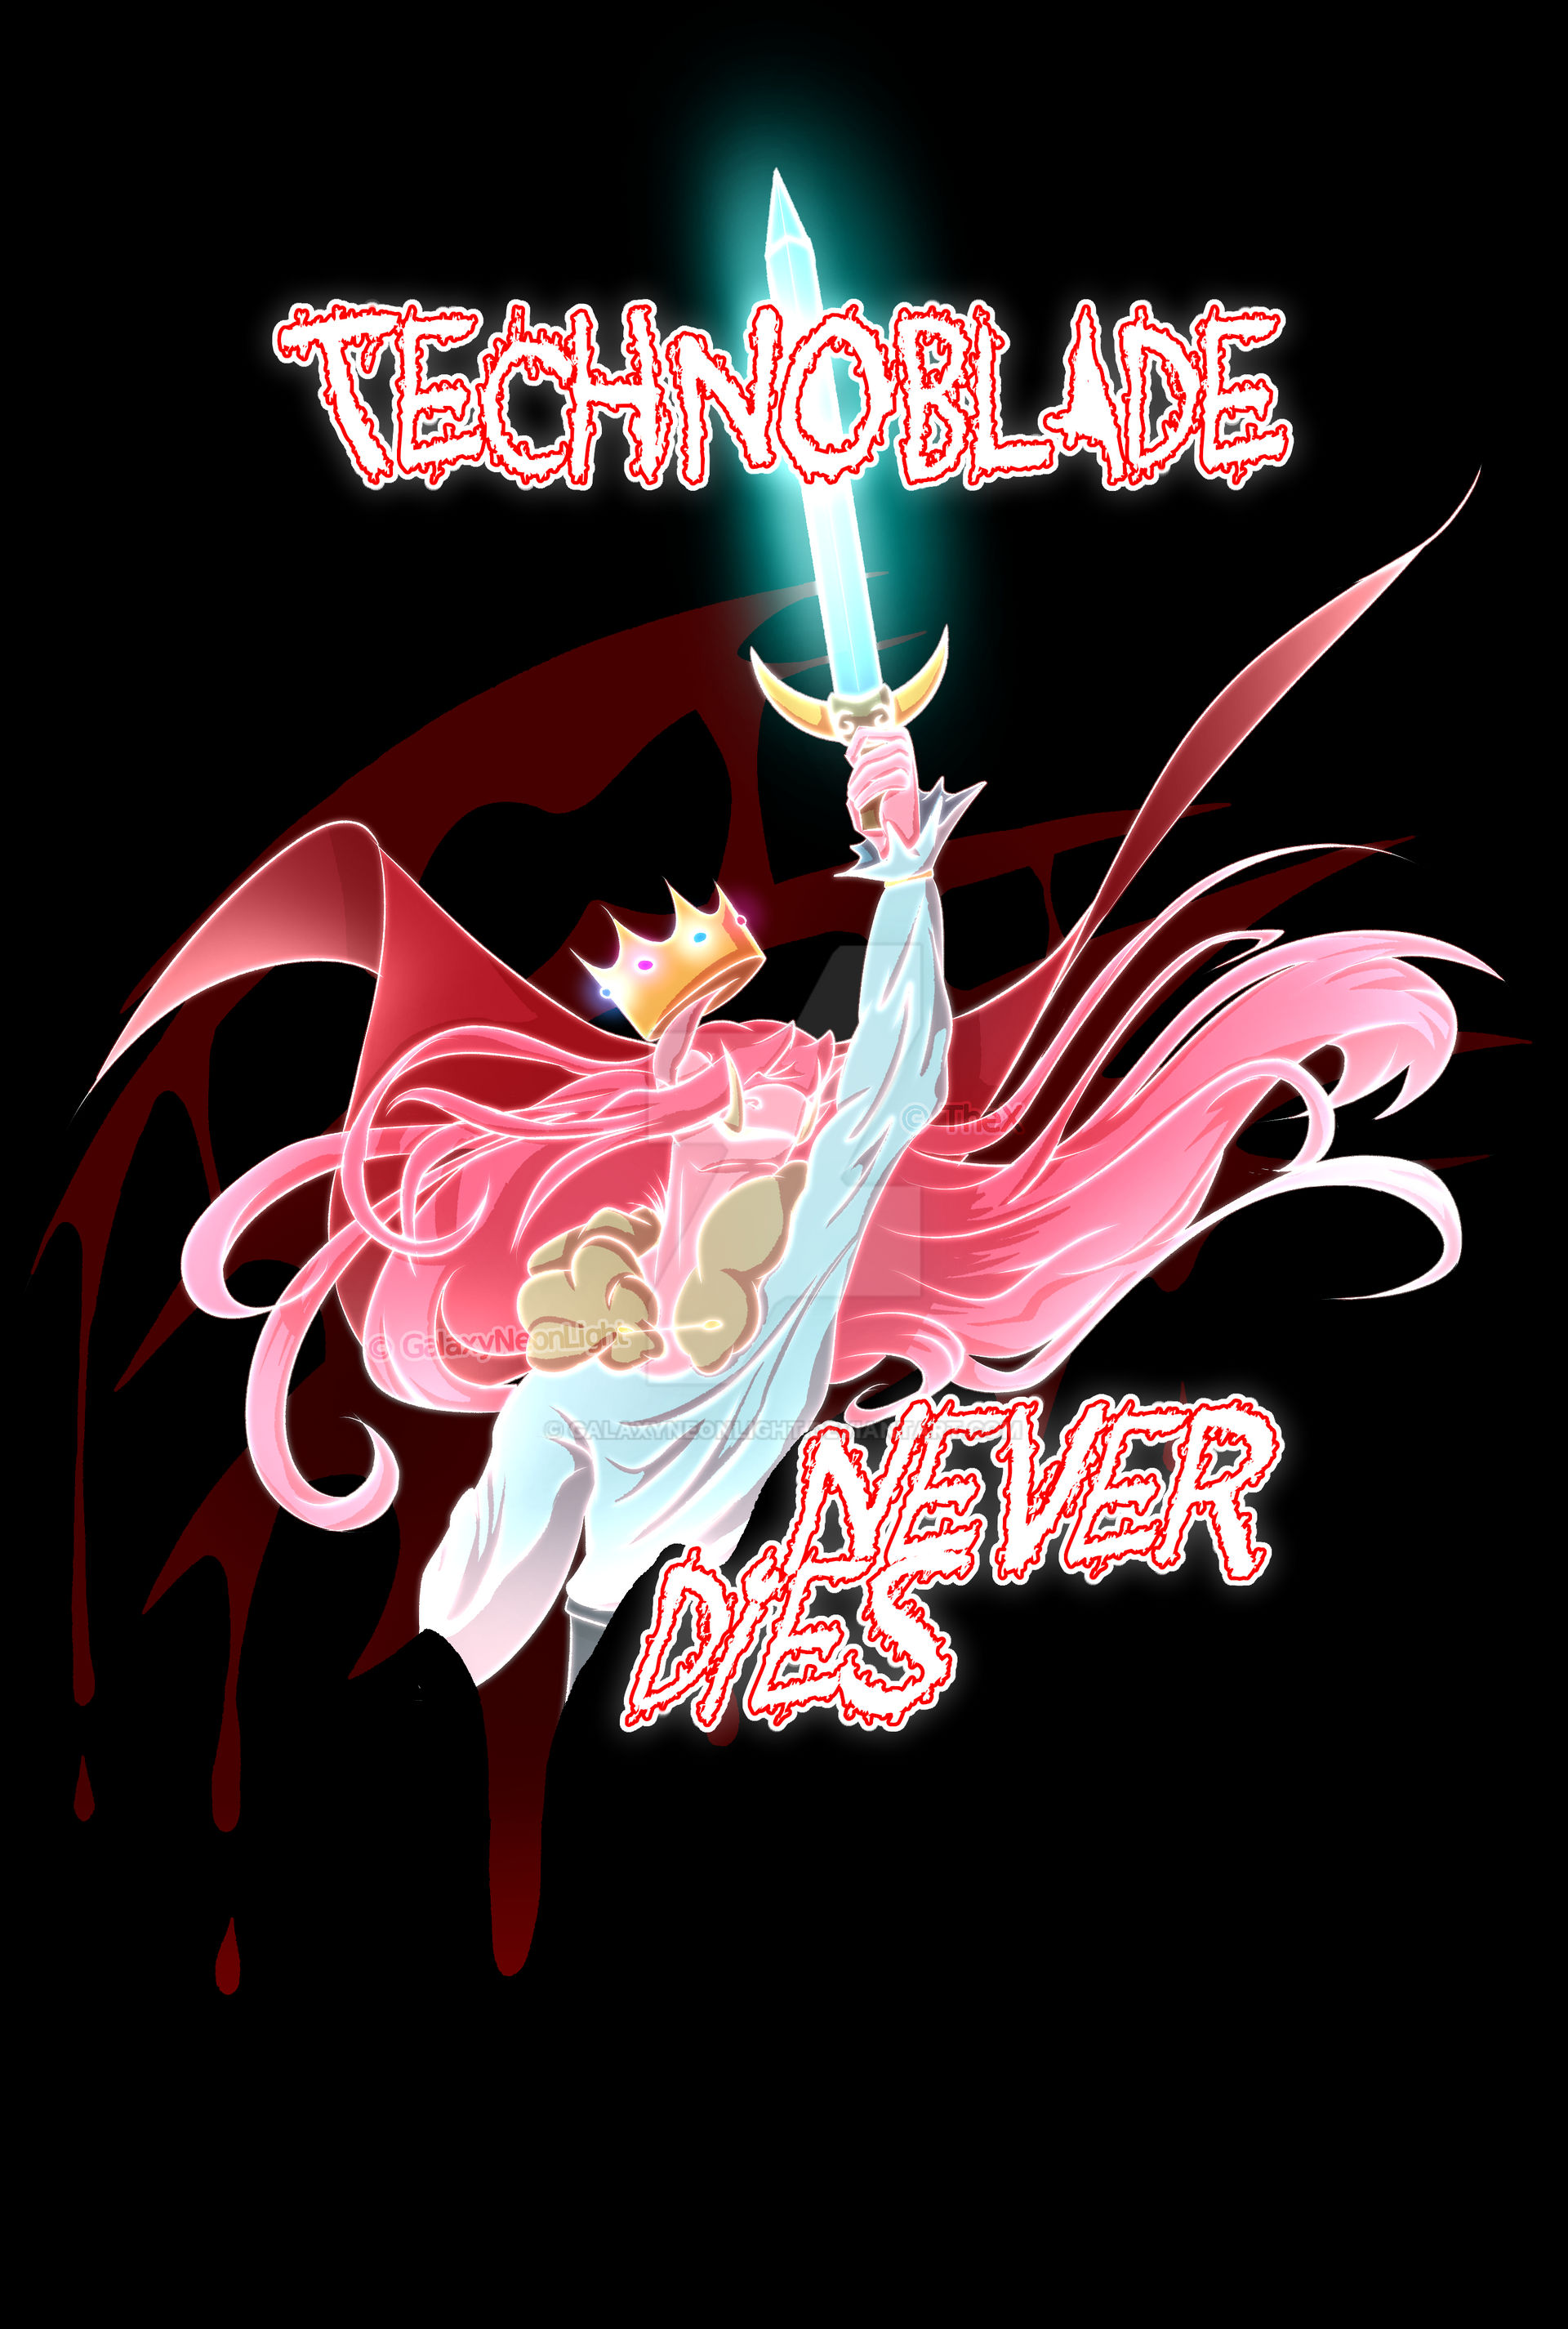 technoblade never dies by localgremliin on DeviantArt